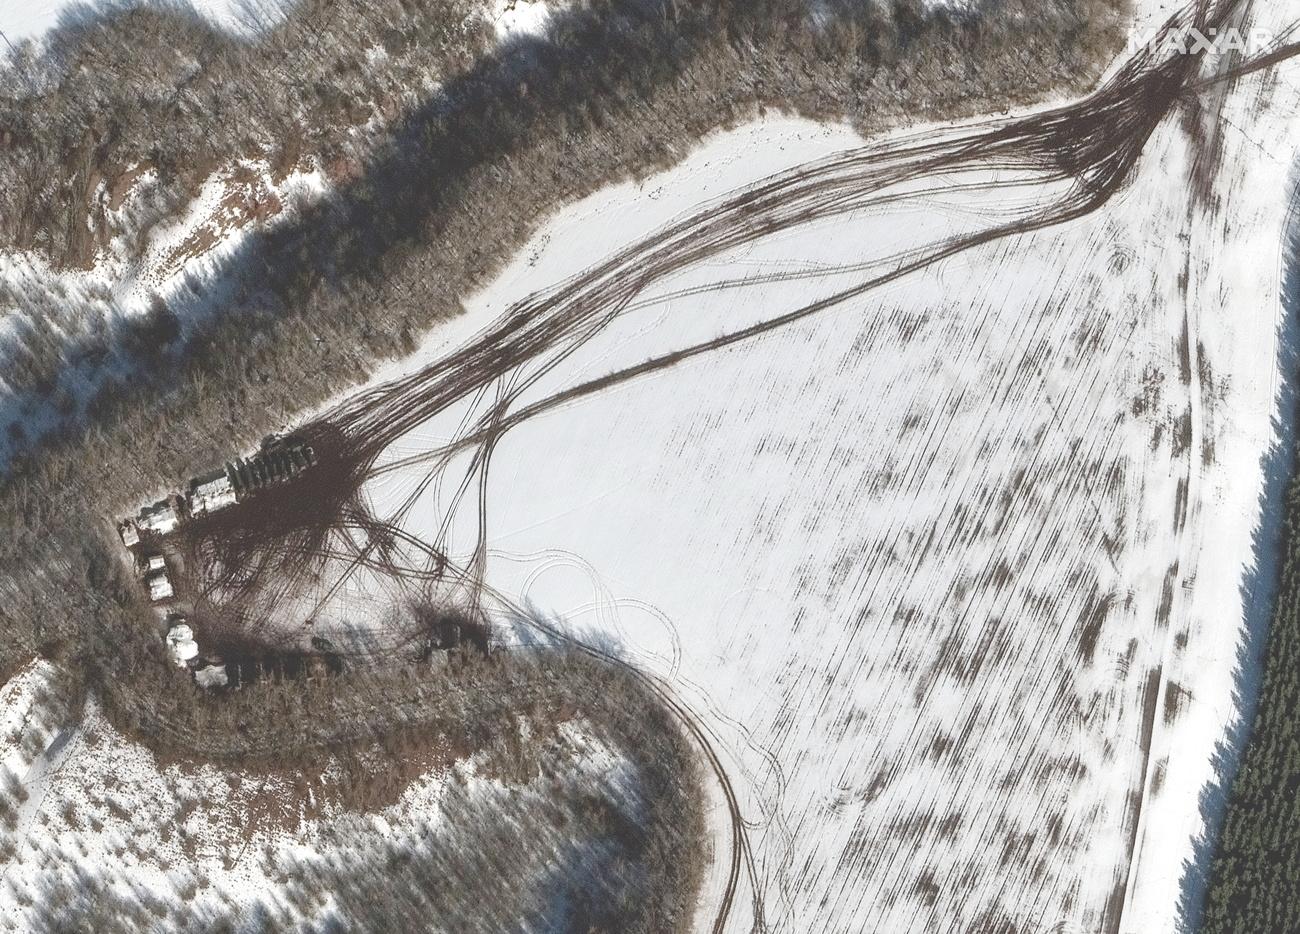 Des images de la société américaine d'imagerie satellitaire Maxar montrent de nouveaux déploiements de troupes russes et de matériel militaire à la frontière ukrainienne. [Keystone - EPA/Maxar Technologies]